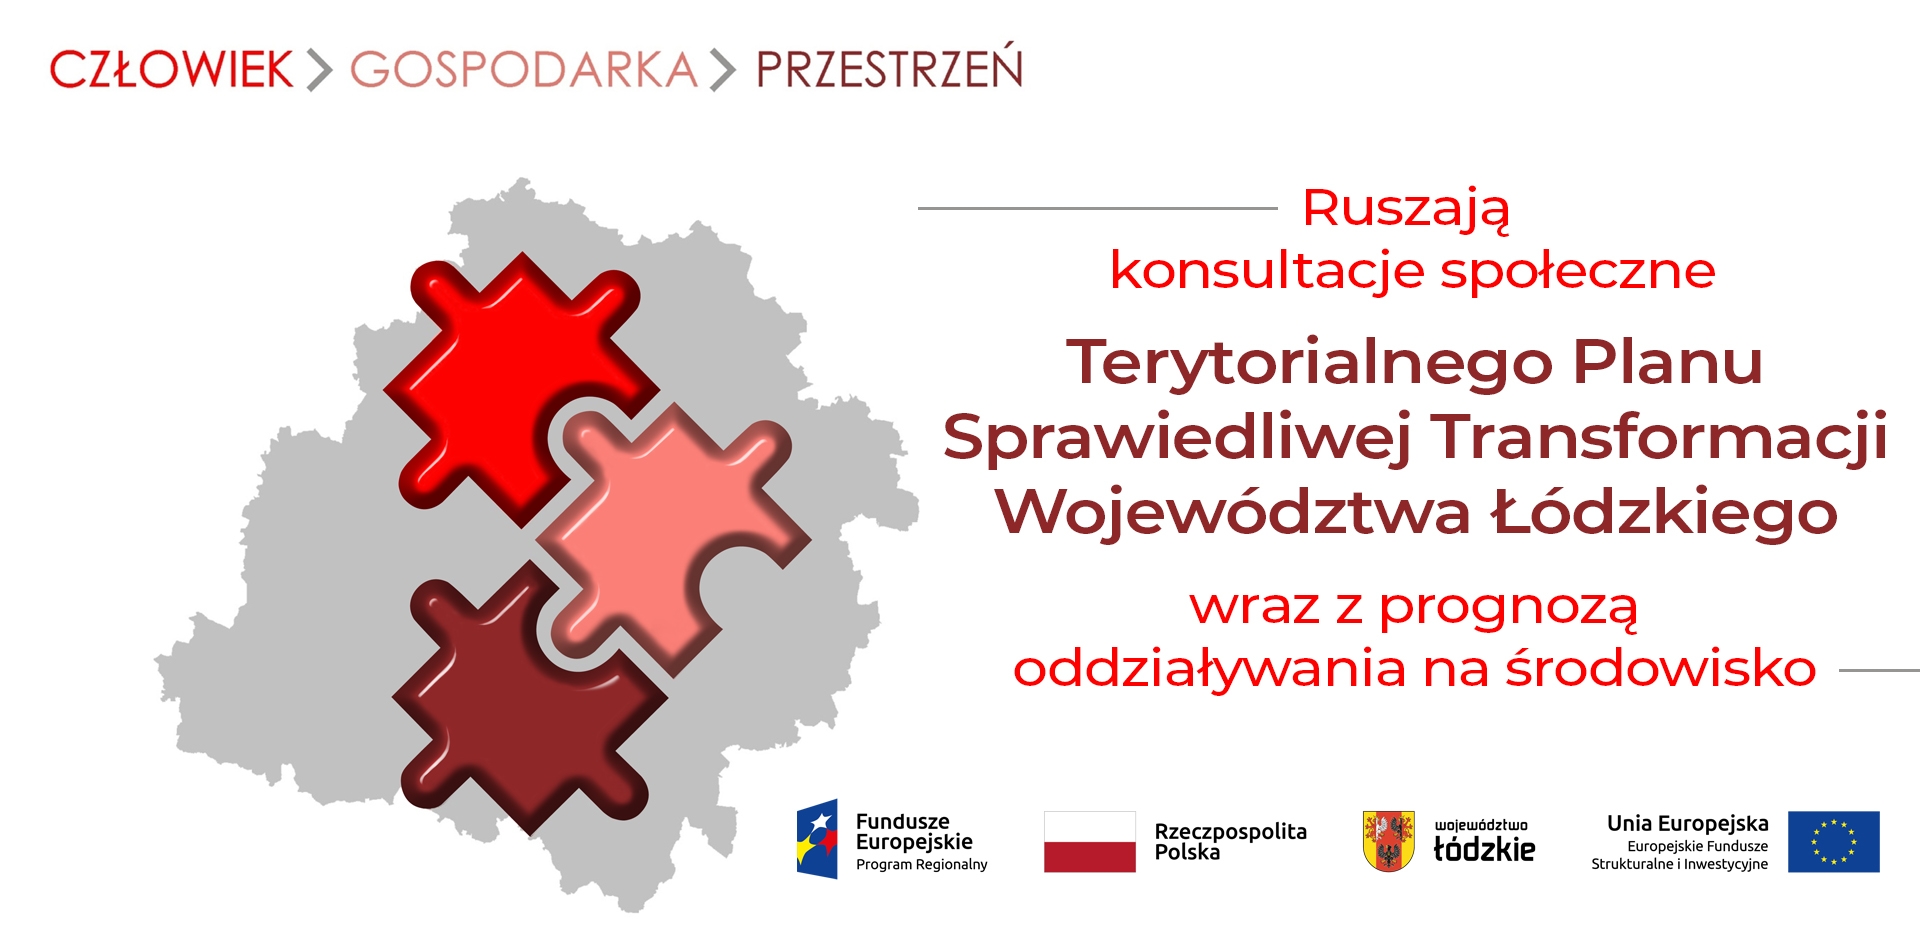 Ruszają konsultacje społeczne projektu Terytorialnego Planu Sprawiedliwej Transformacji Województwa Łódzkiego